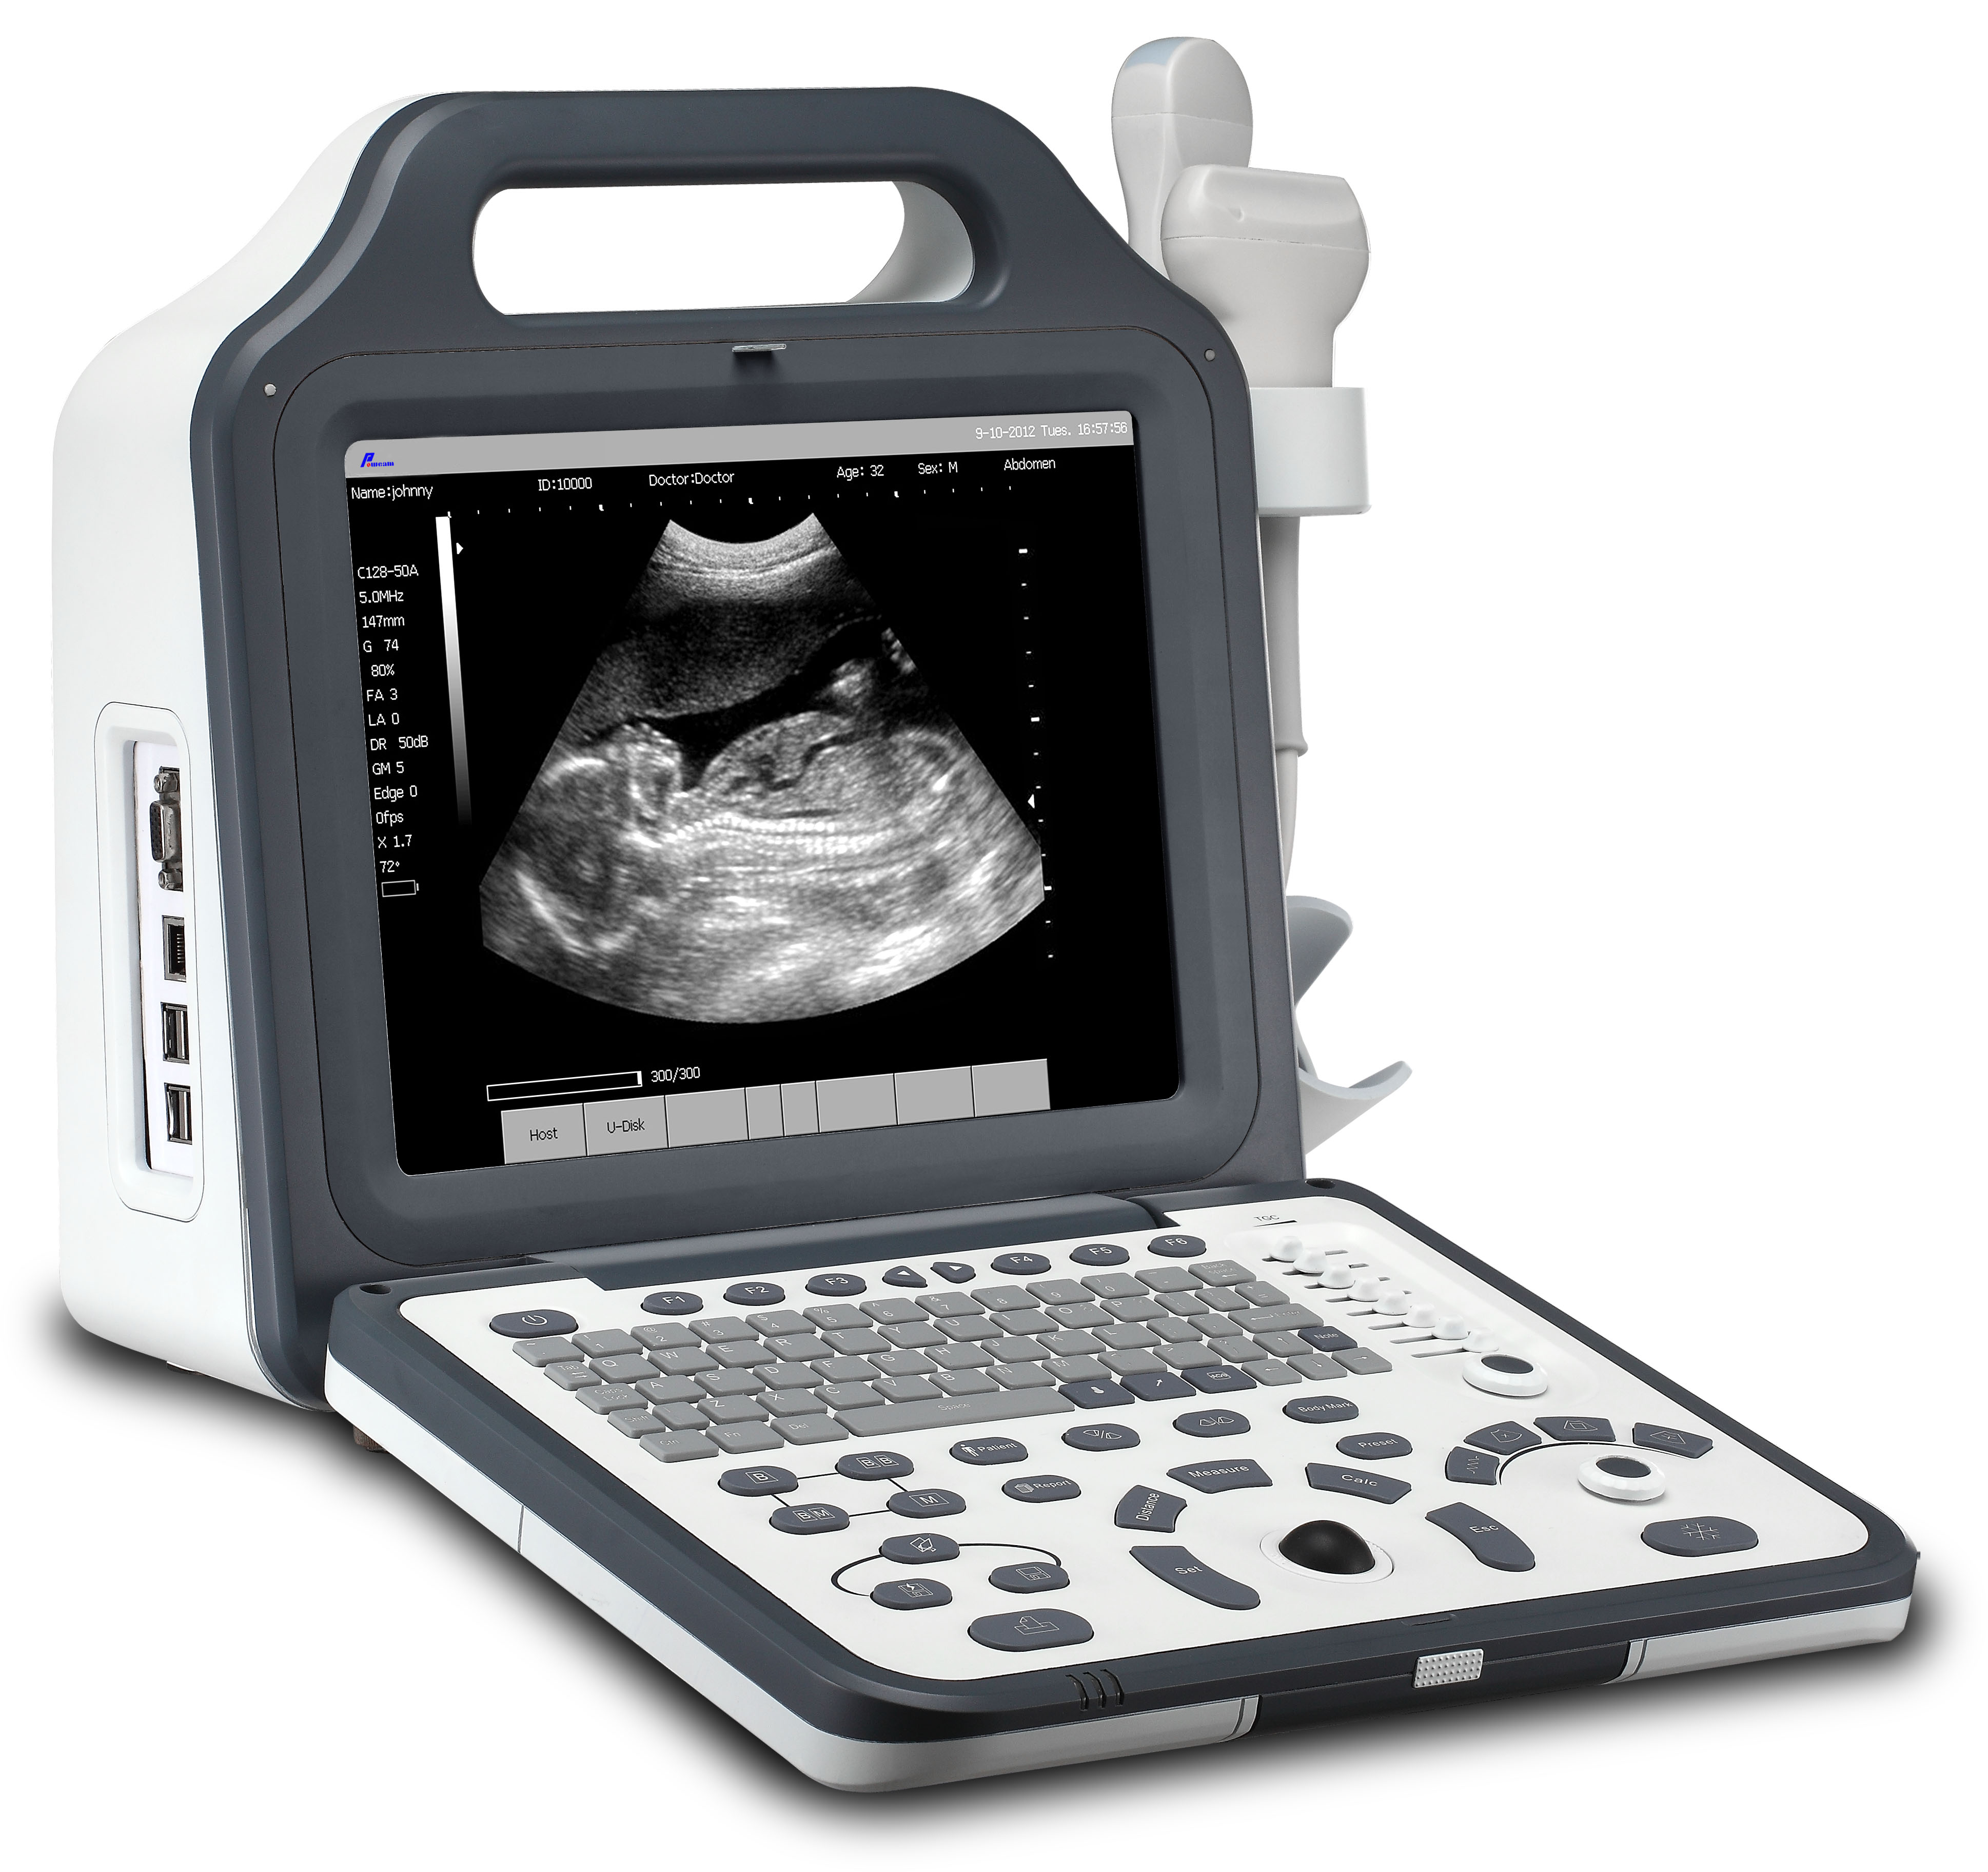 Hospital aprobado por CE 12.1 "LCD Ultrasonido digital para computadora portátil (WHYC60P)